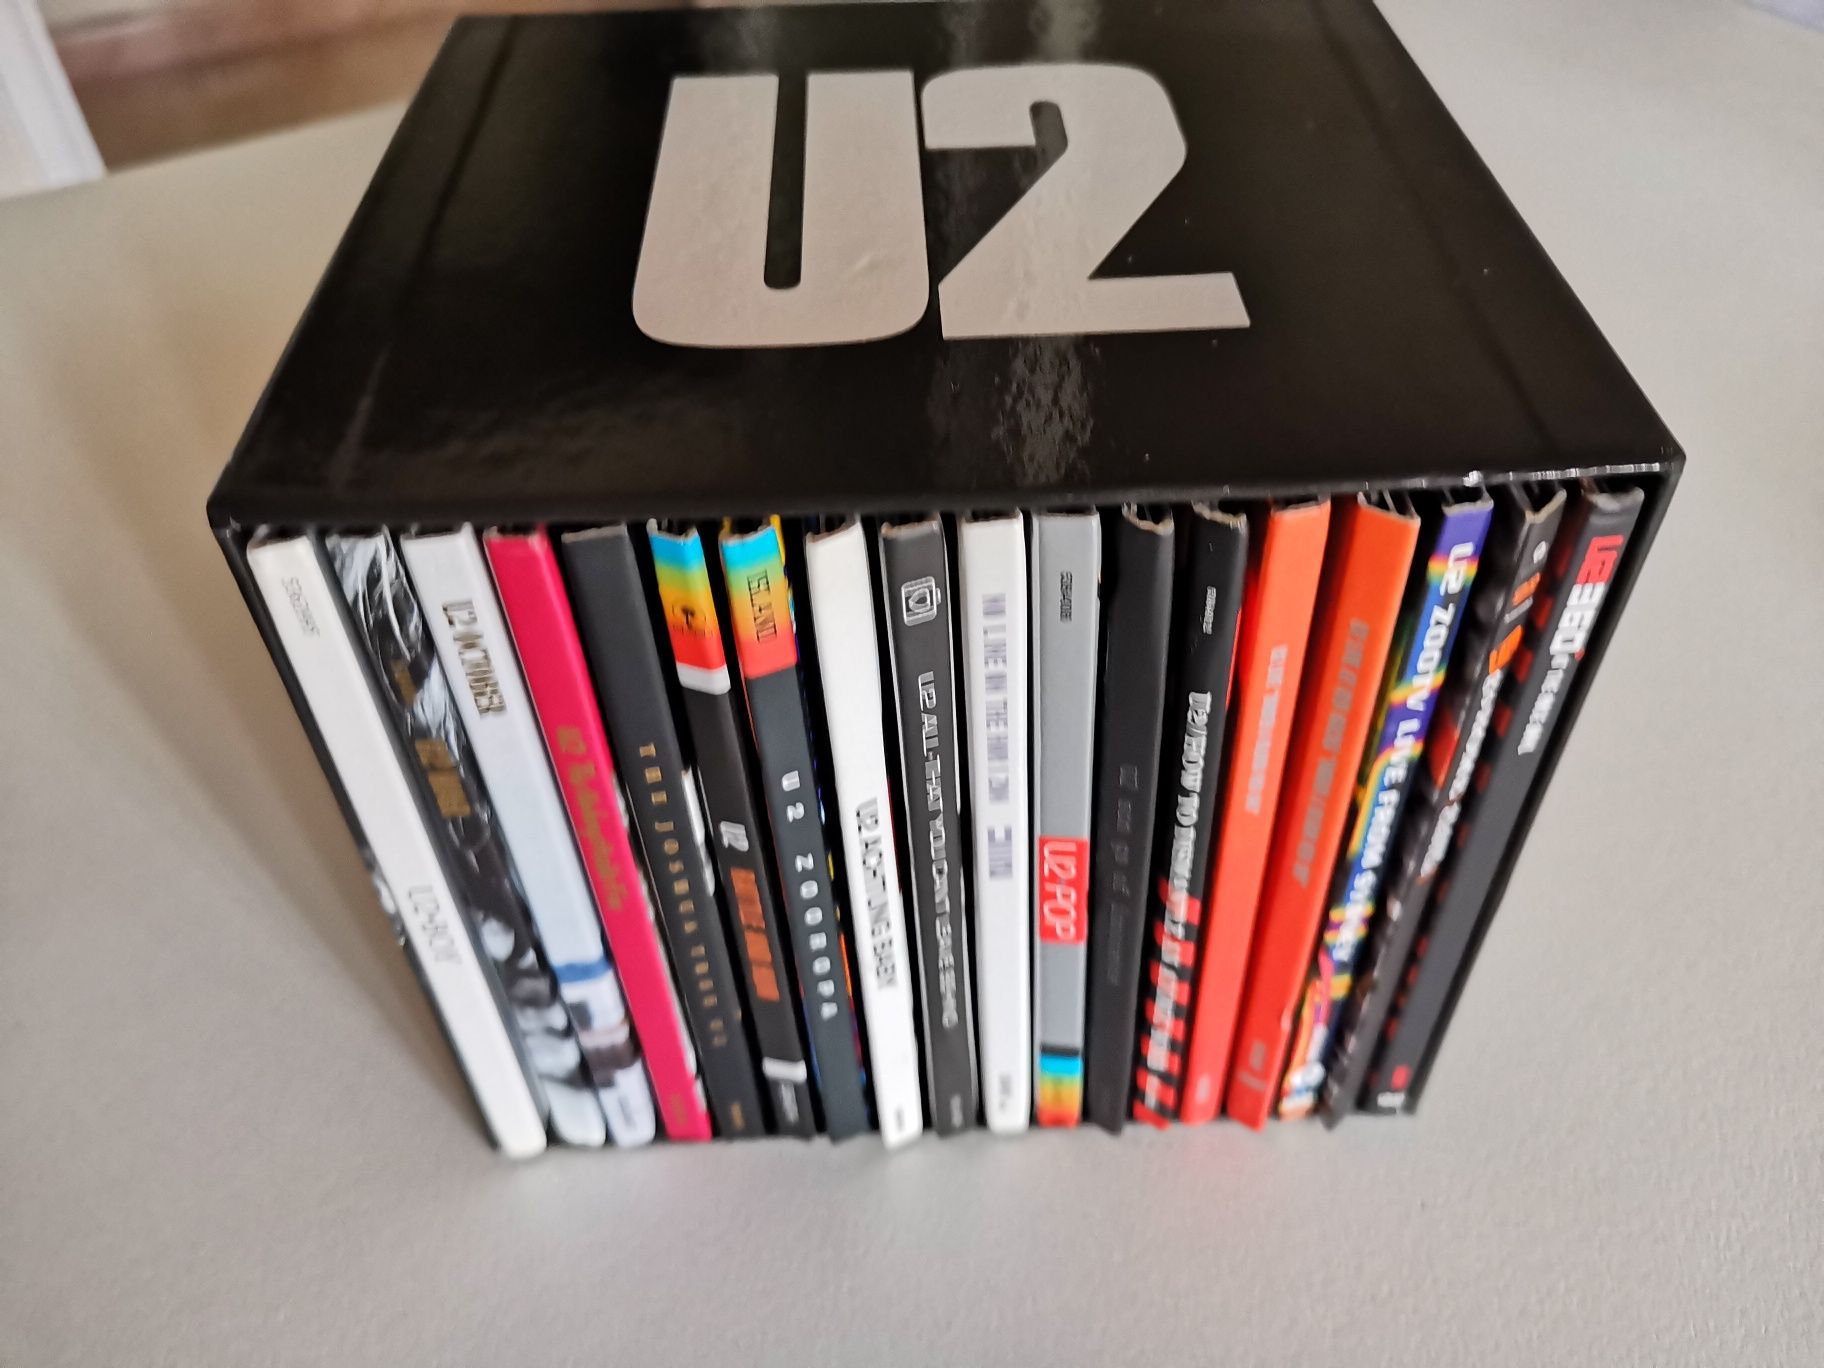 Discografia completa U2 e 4 DVDs